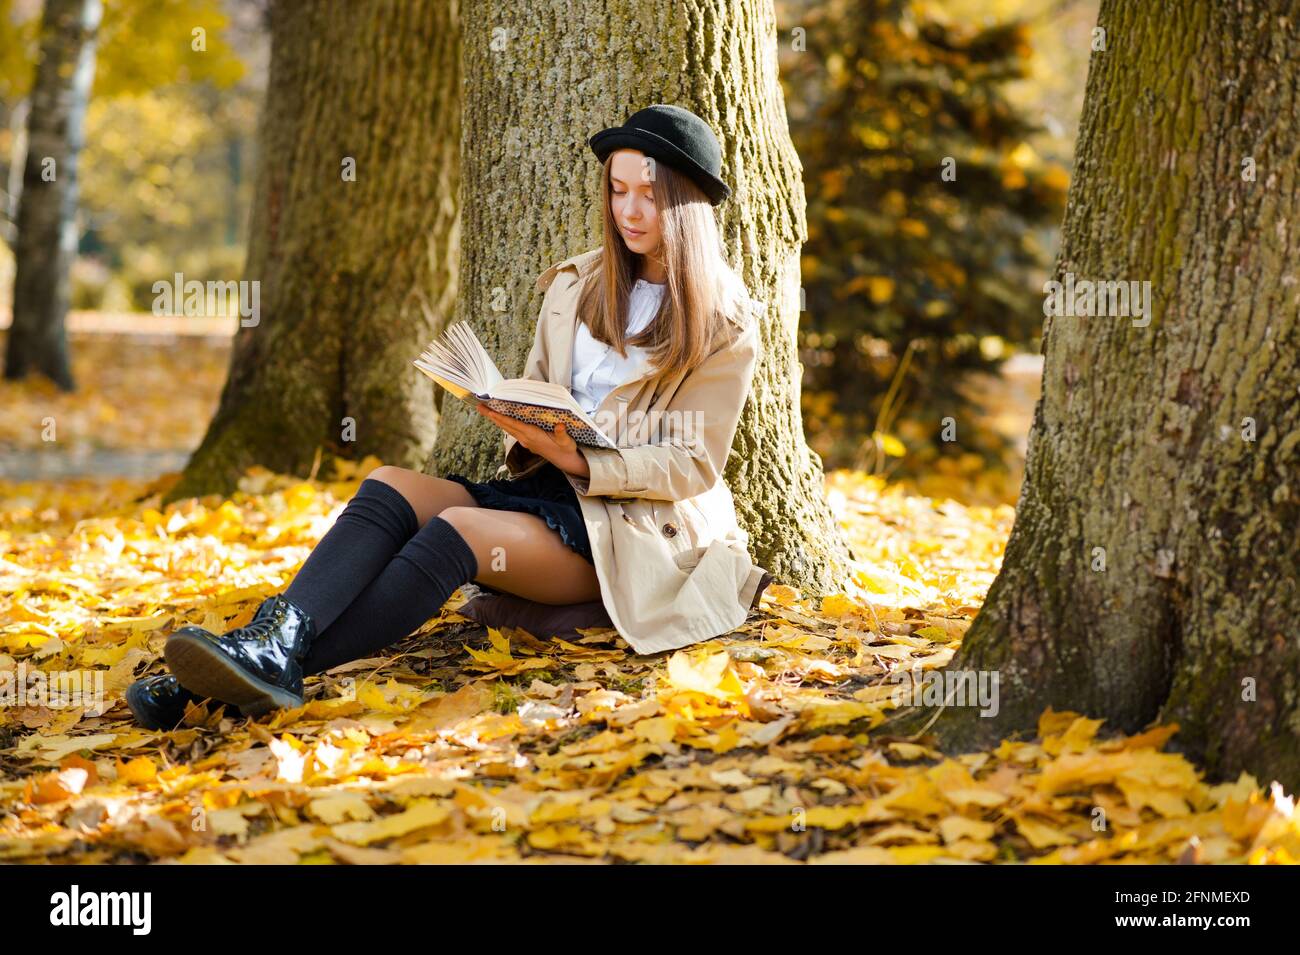 Ihr ruhiger Ort. Horizontales Porträt eines schönen jungen Mädchens, das ein Buch liest, das in der Nähe eines Baumes sitzt Stockfoto